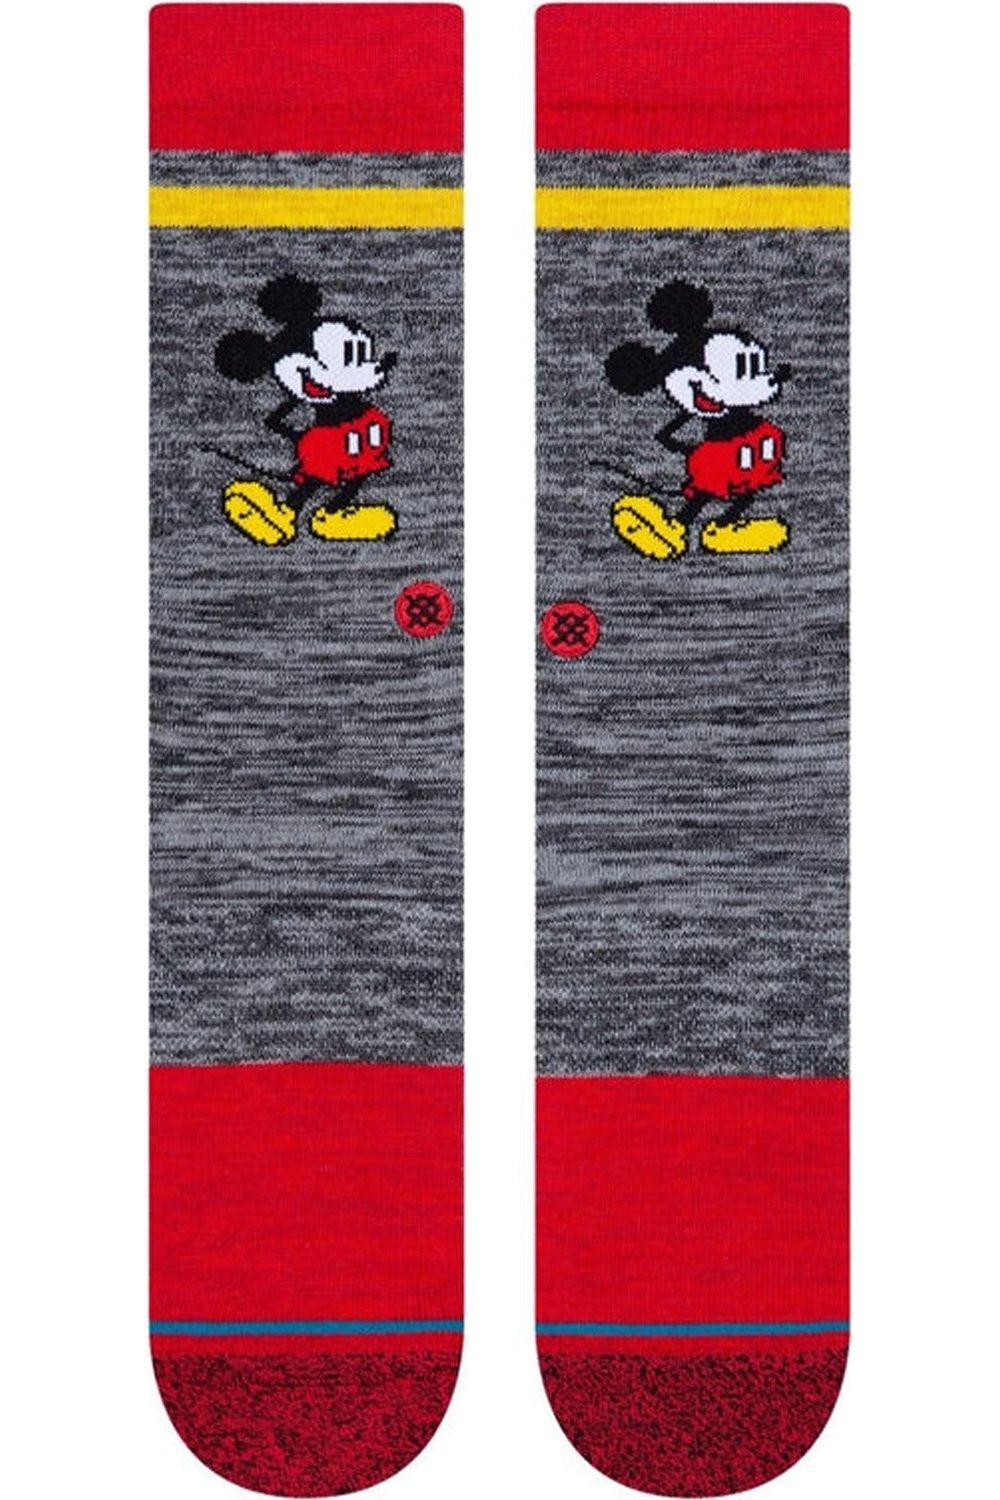 Stance Vintage Disney 2020 Socks